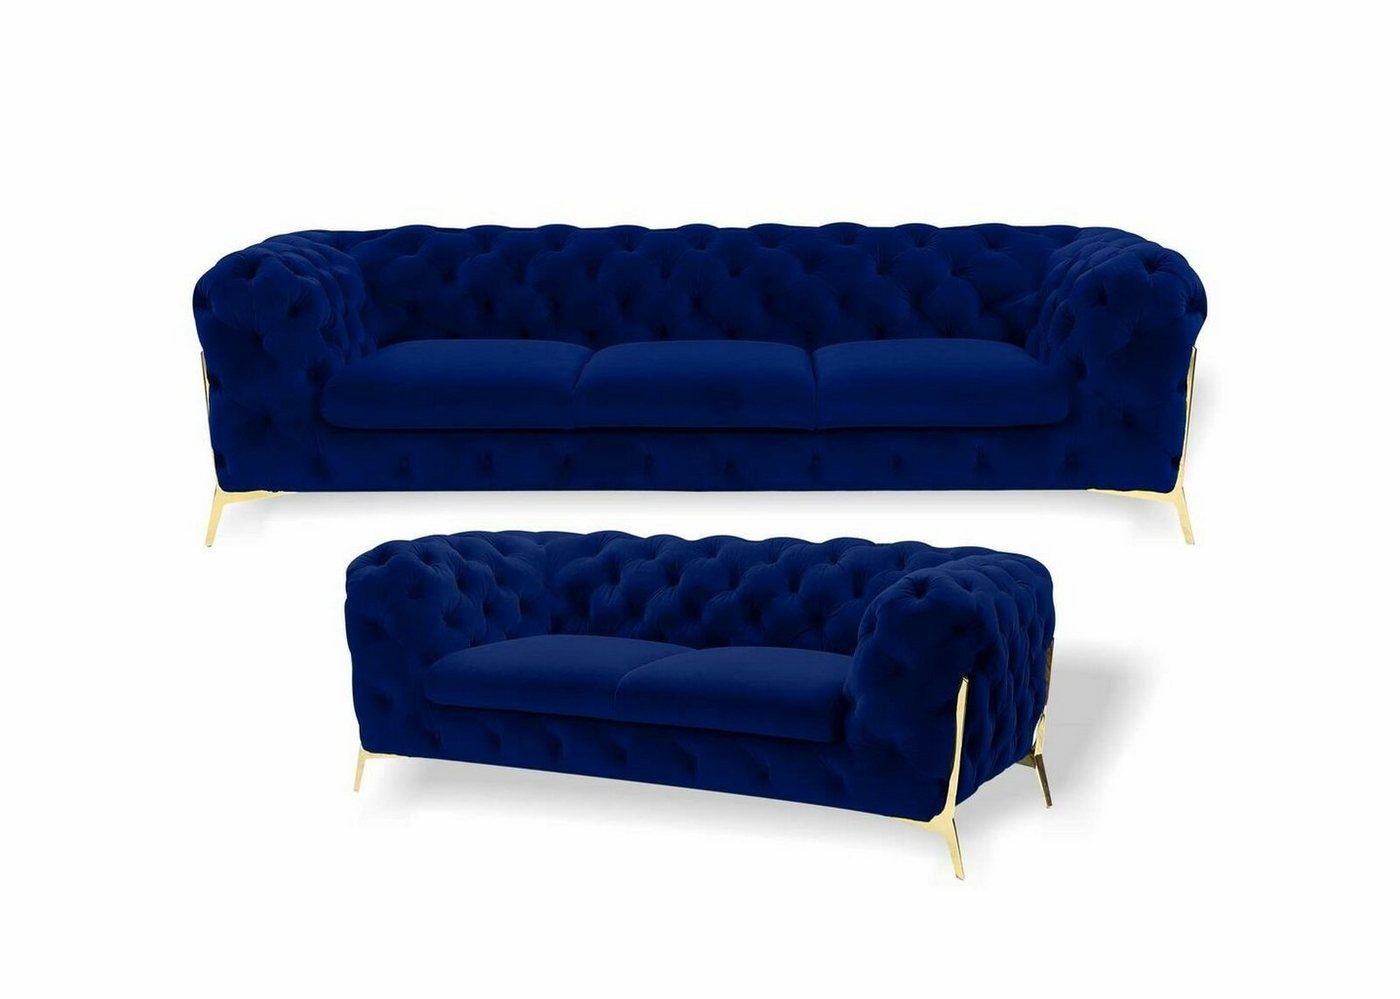 JVmoebel Sofa Blaue Luxus Moderne Chesterfield Couchgarnitur 3+2 Sitzer Neu, Made in Europe von JVmoebel